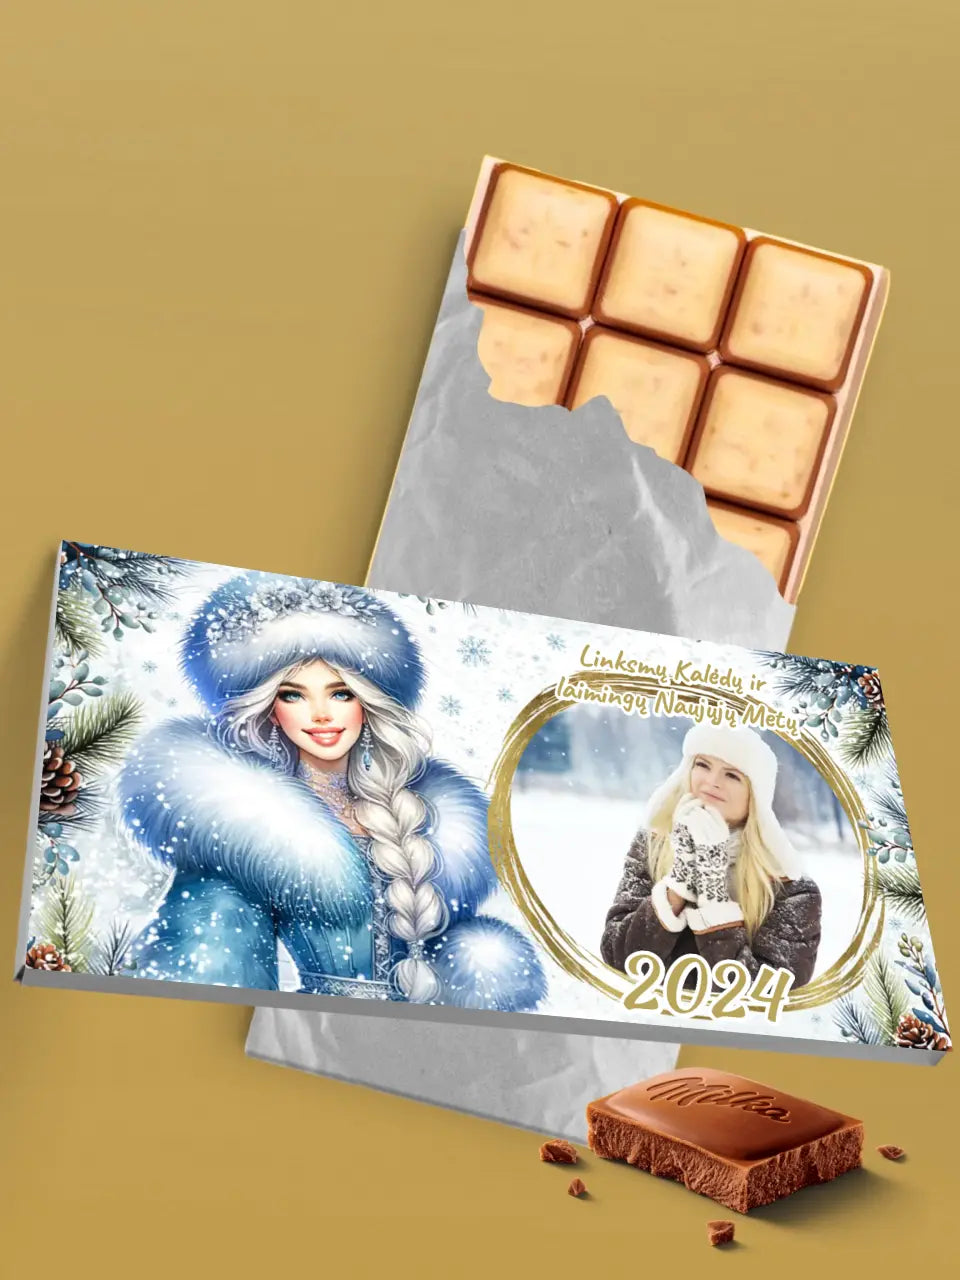 Personalizuotas "Kalėdinis dizainas 8“ šokoladas su jūsų nuotrauka